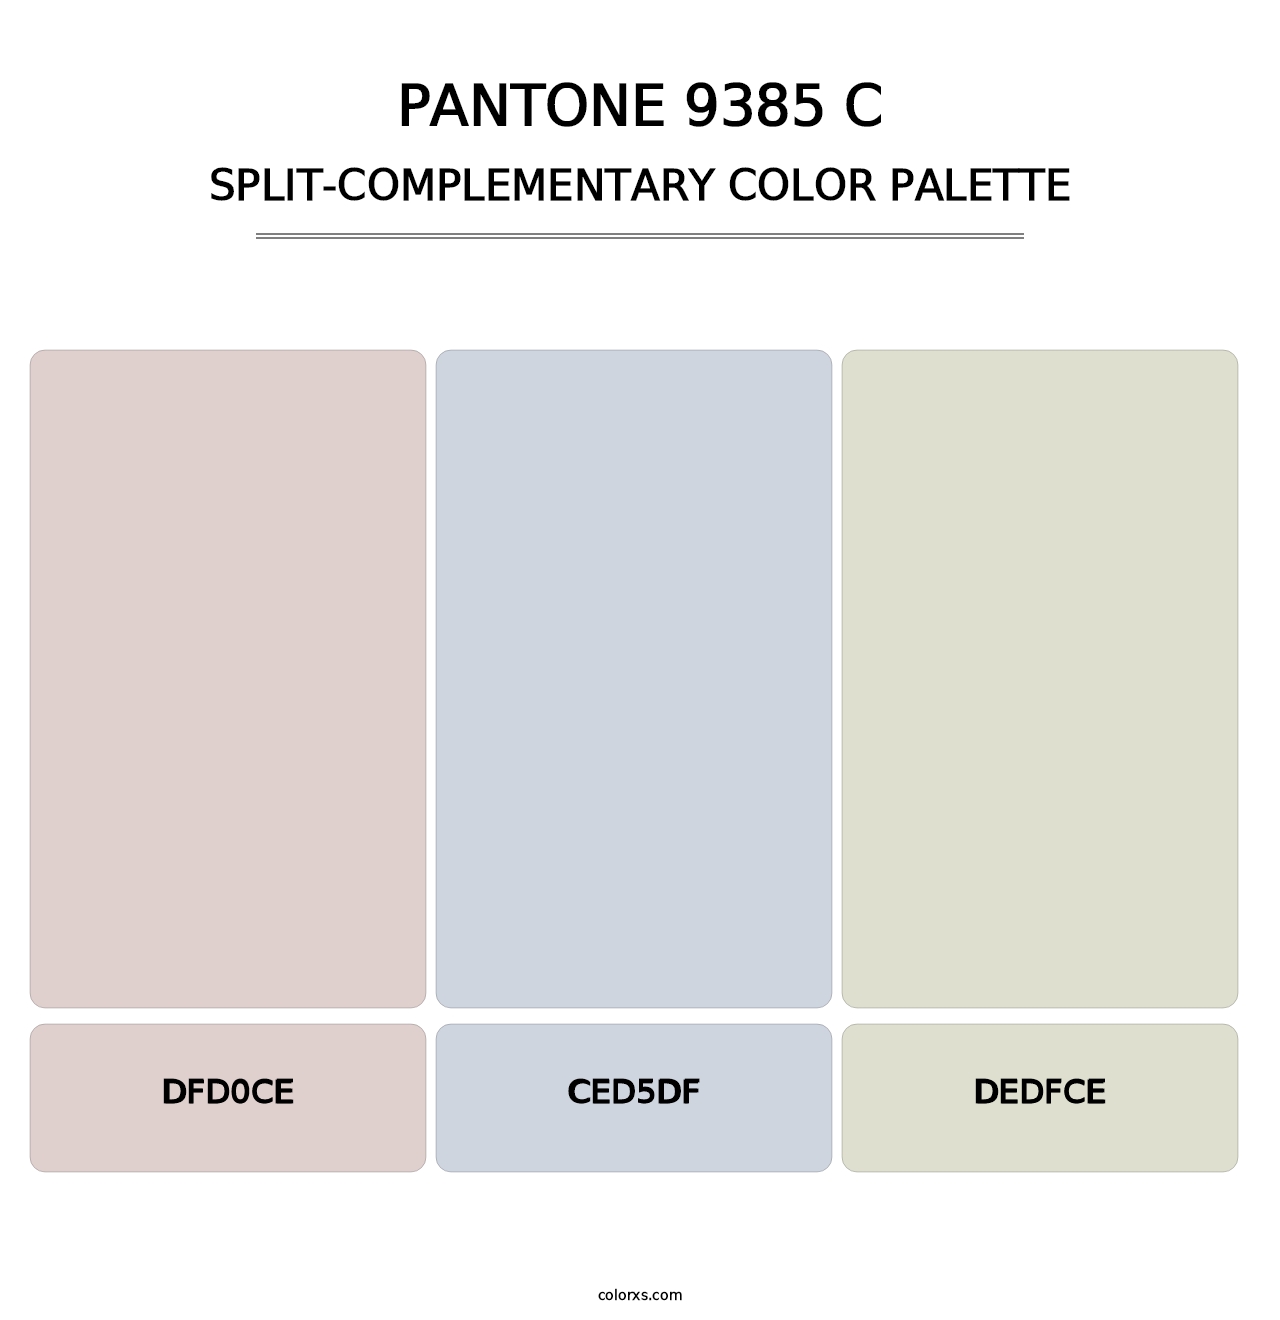 PANTONE 9385 C - Split-Complementary Color Palette